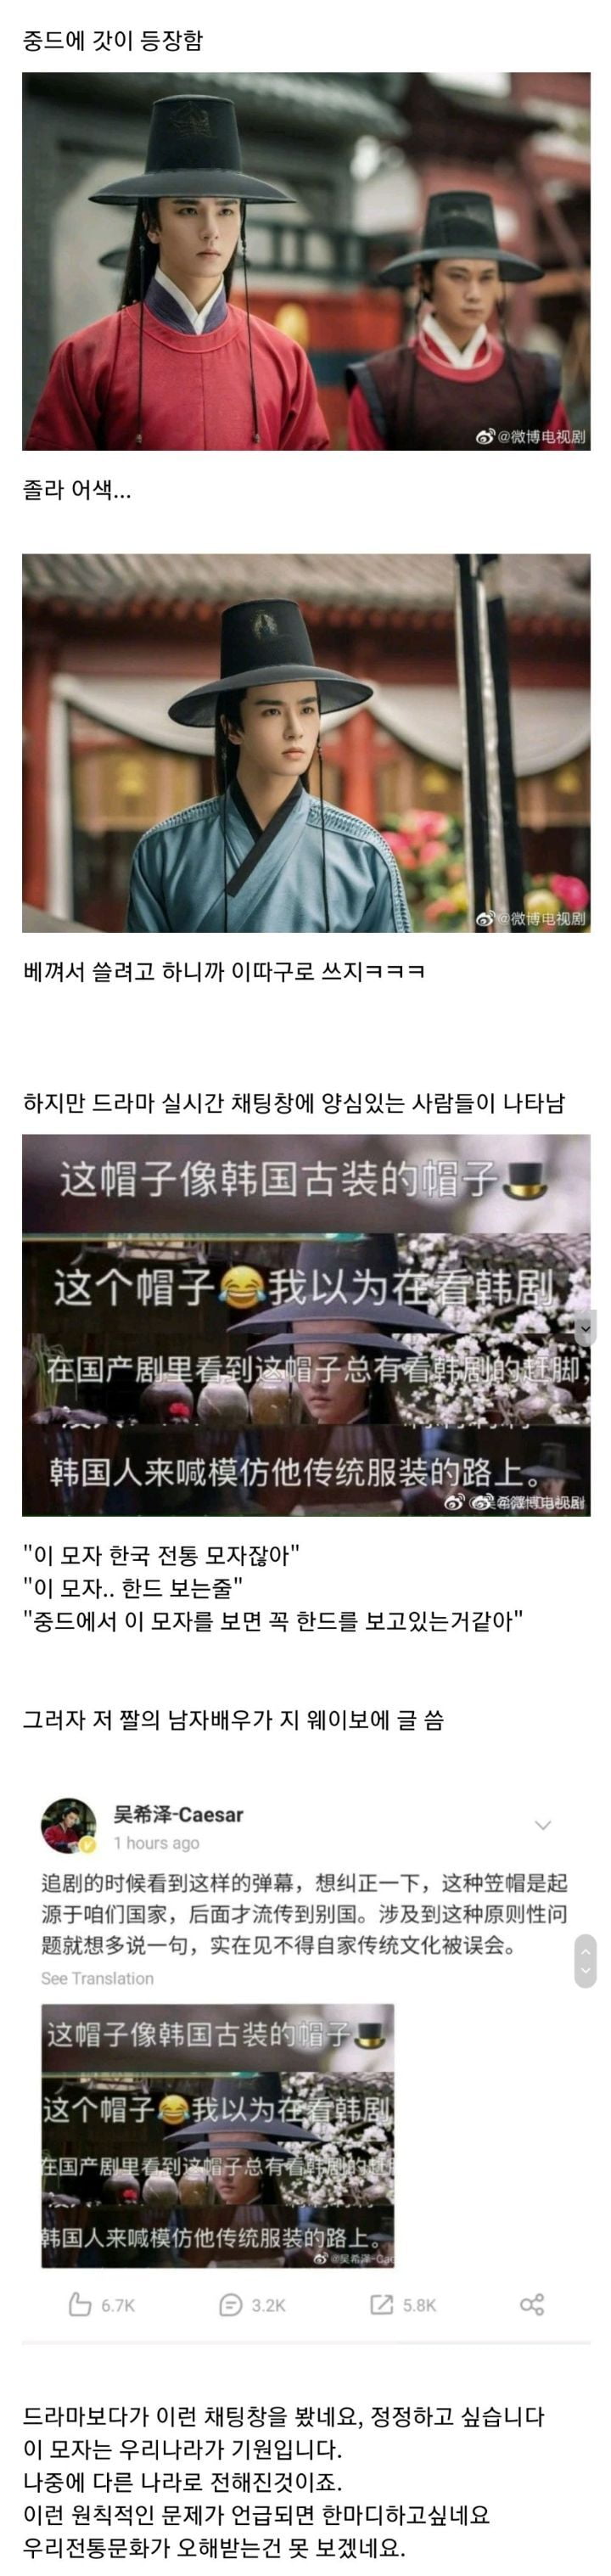 중국 드라마에 갓이 나오자 중국인들 반응 ㄷㄷ.jpg